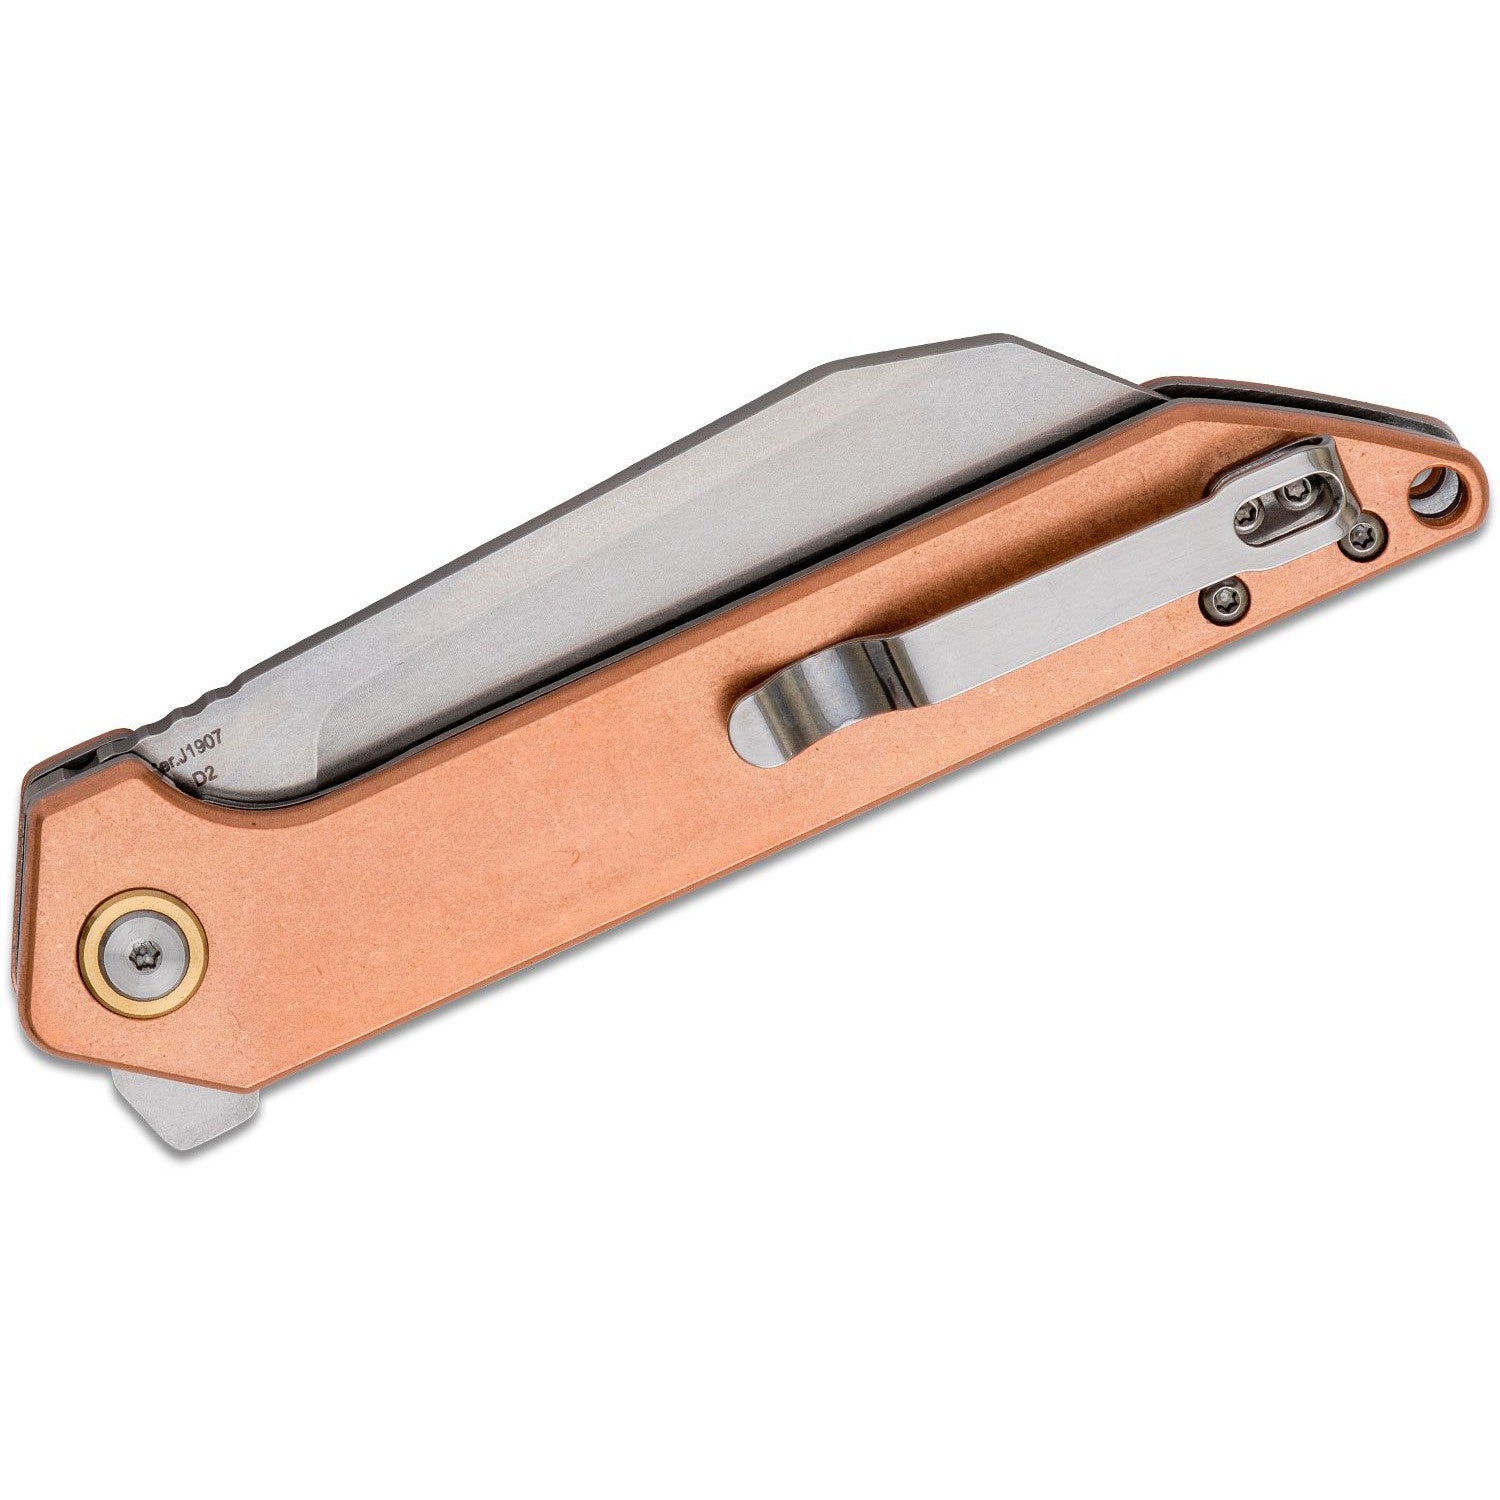 Rampart Linerlock - Copper-CJRB-OnlyKnives